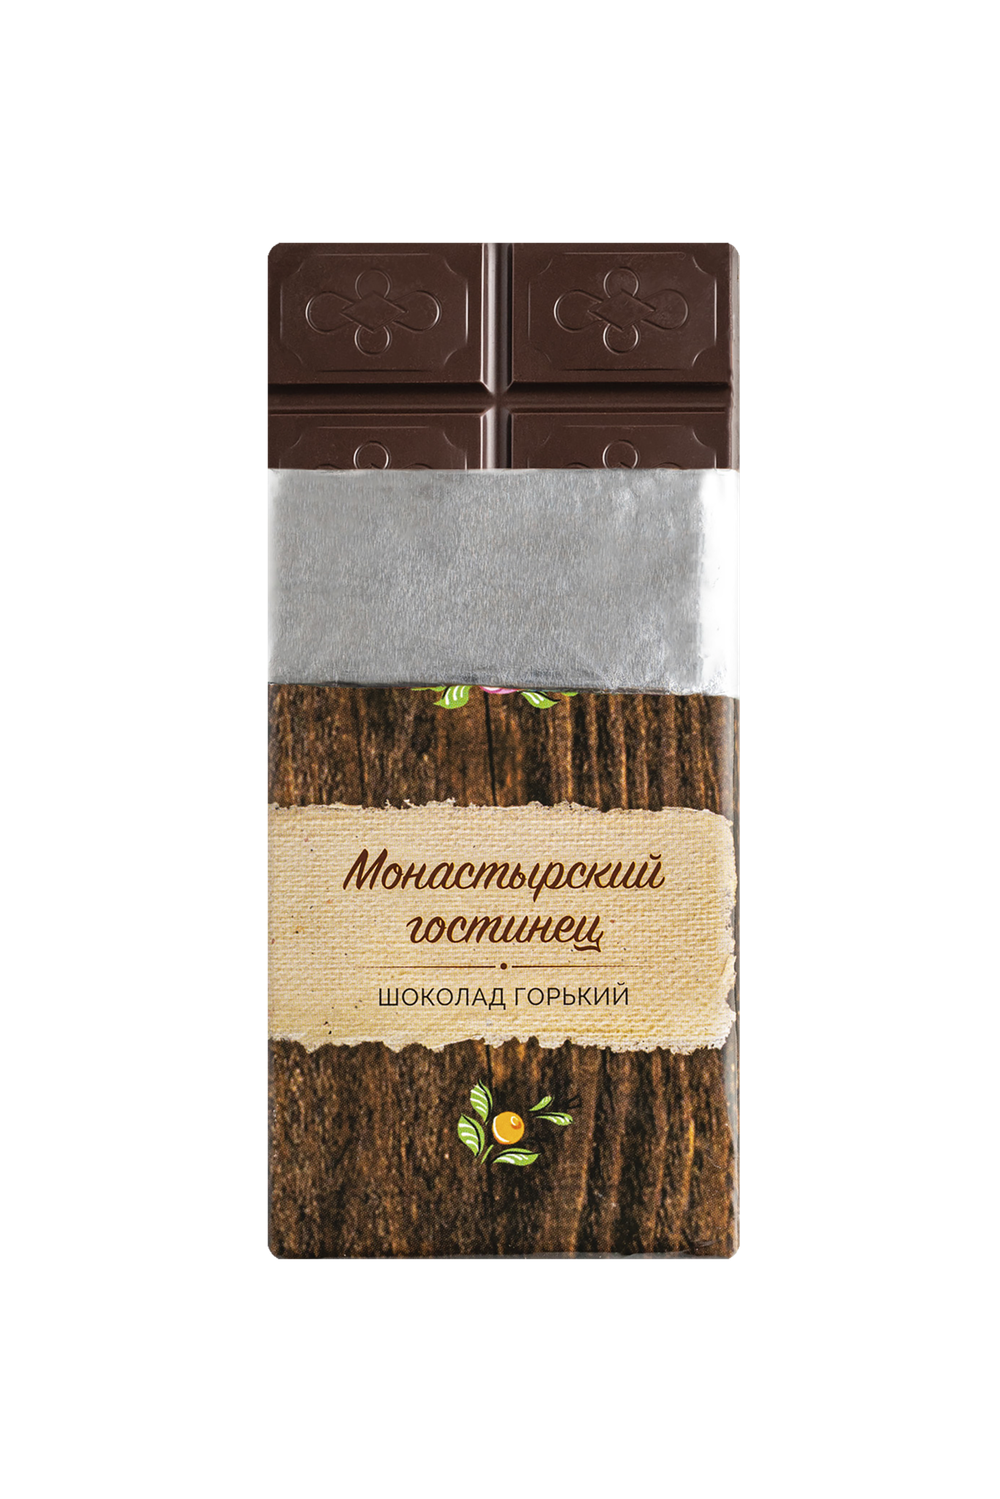 Шоколад горький постный  Жостово, "Монастырский гостинец" в бумажной этикетке